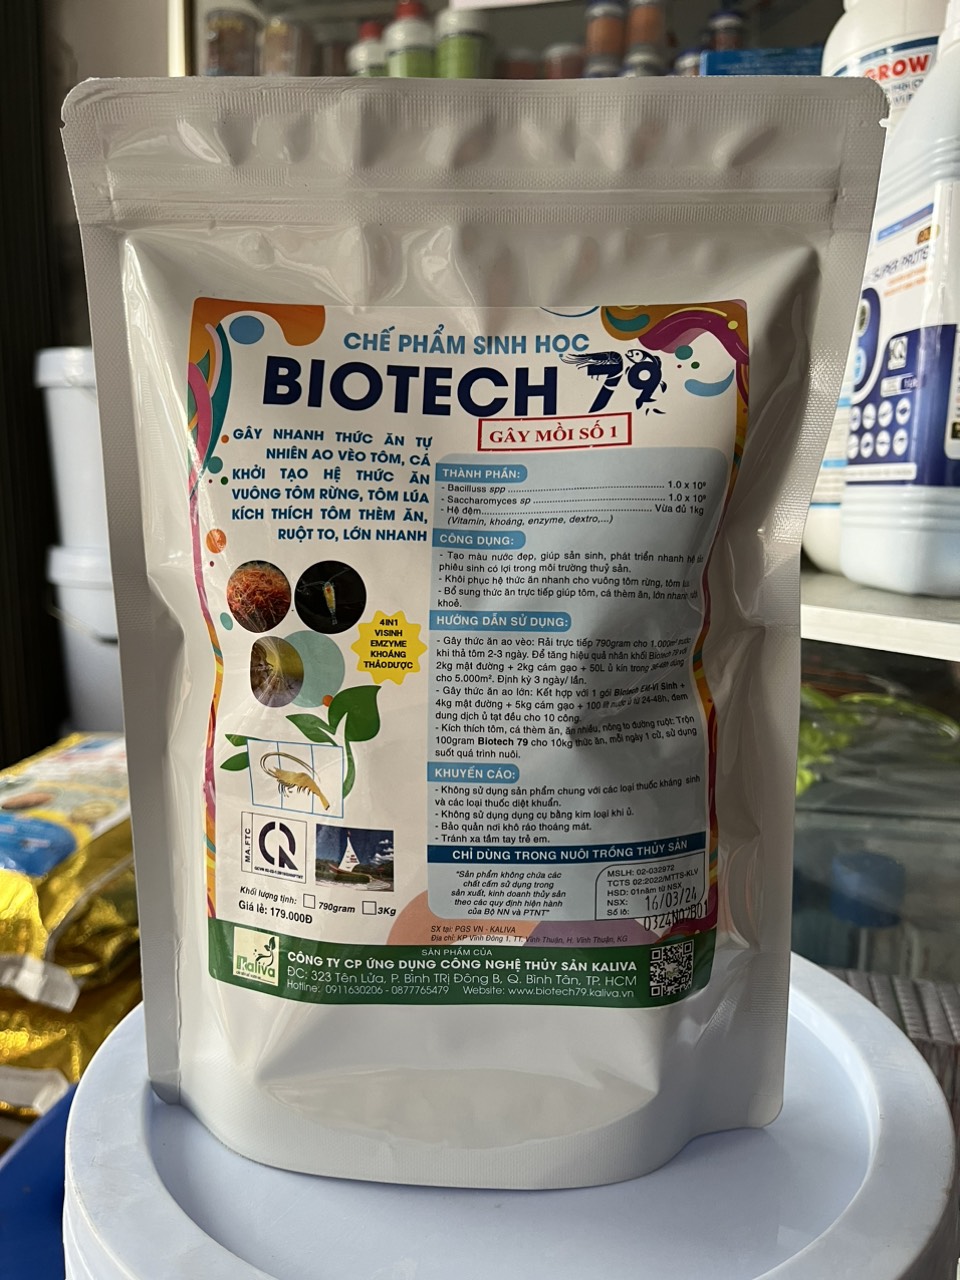 Bio tech 79 gây thức ăn tự nhiên trùn chỉ ốc gạo túi 750 gram